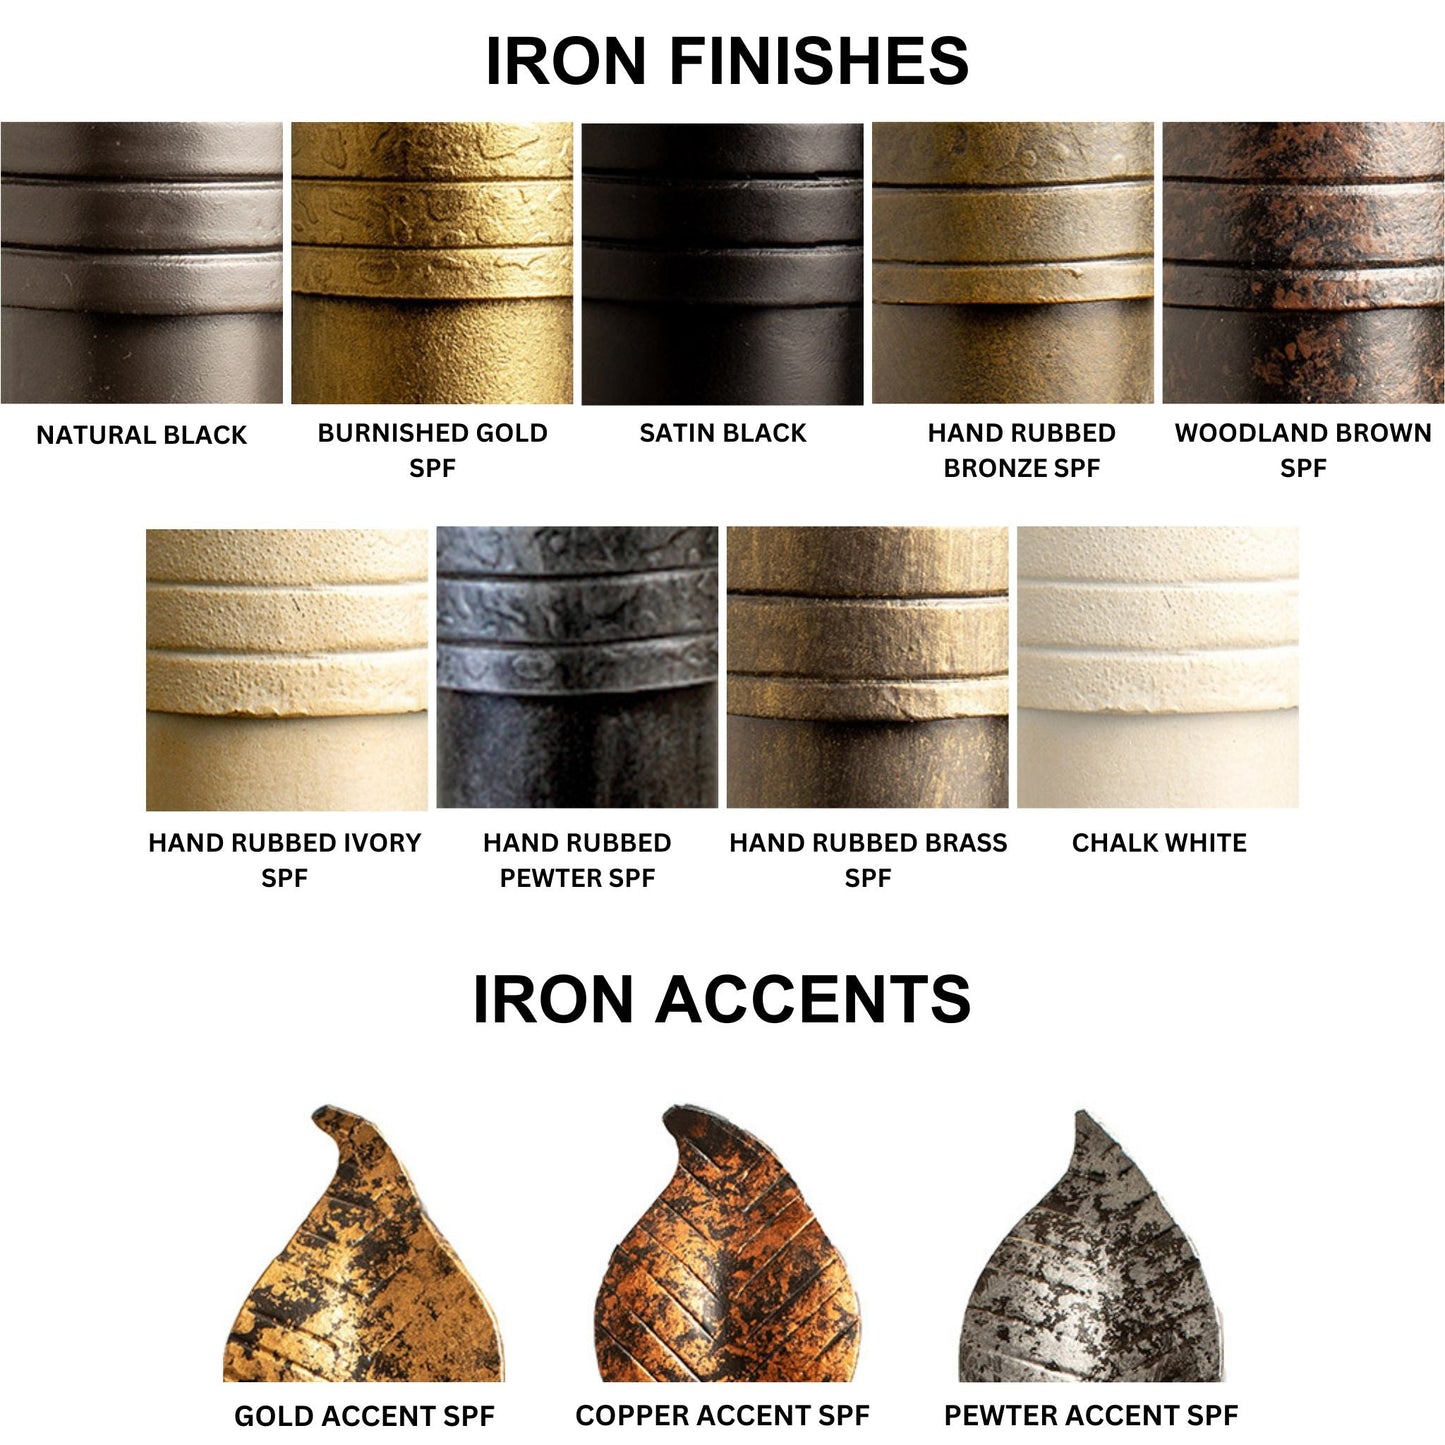 Stone County Ironworks Sassafras 15" 3-Tier Burnished Gold Iron Standing Shelf Base